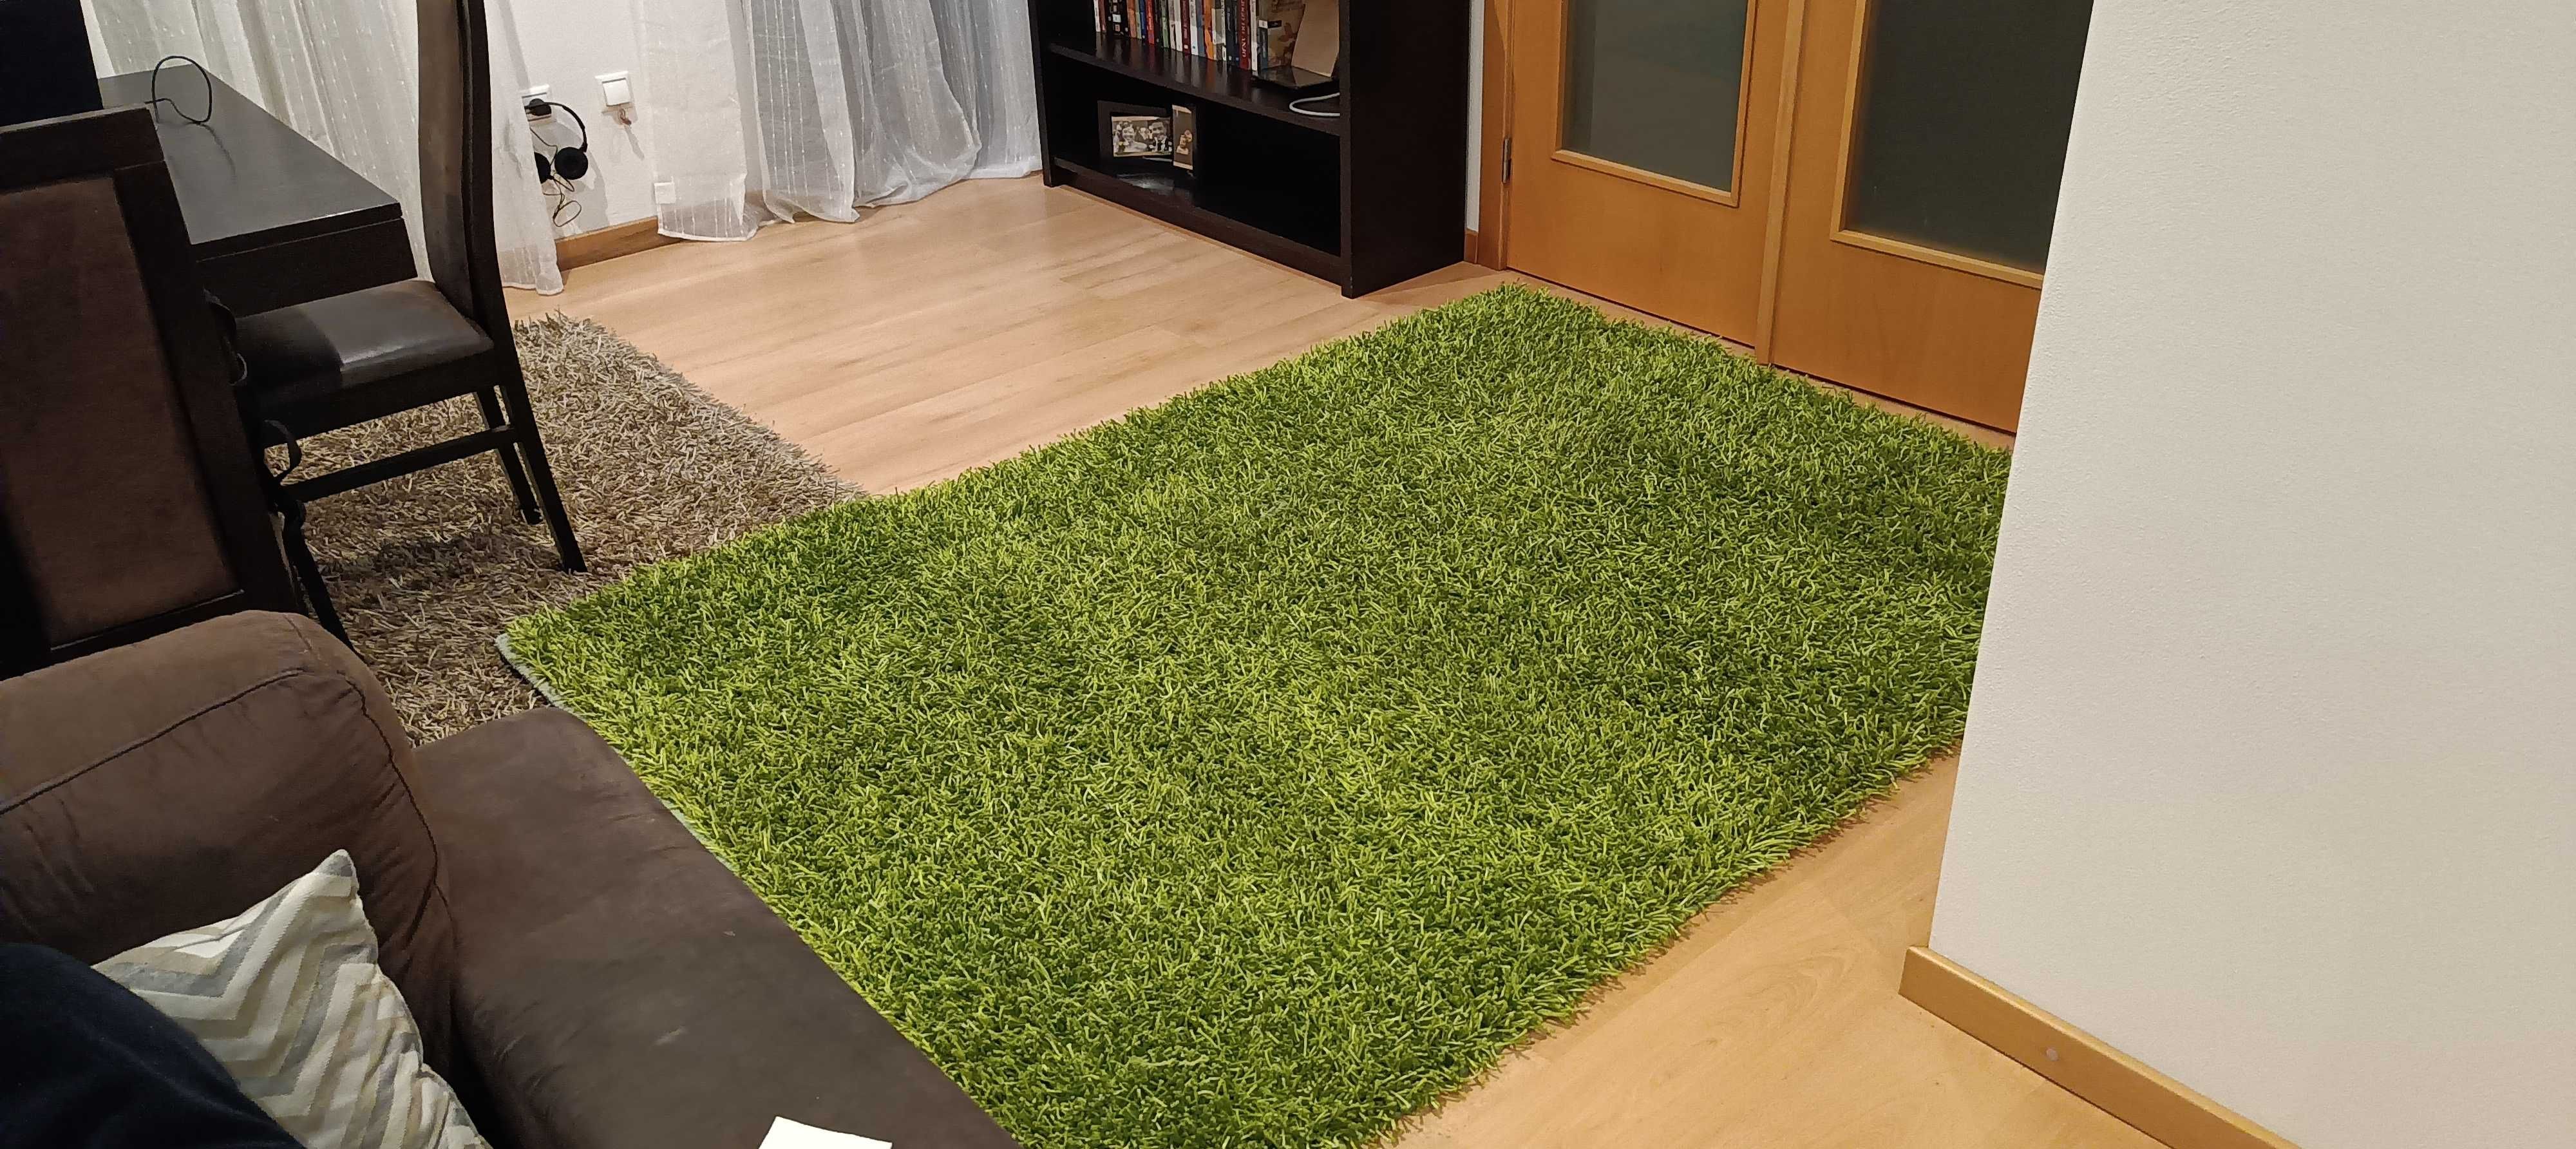 Vendo carpete verde de boa qualidade em bom estado